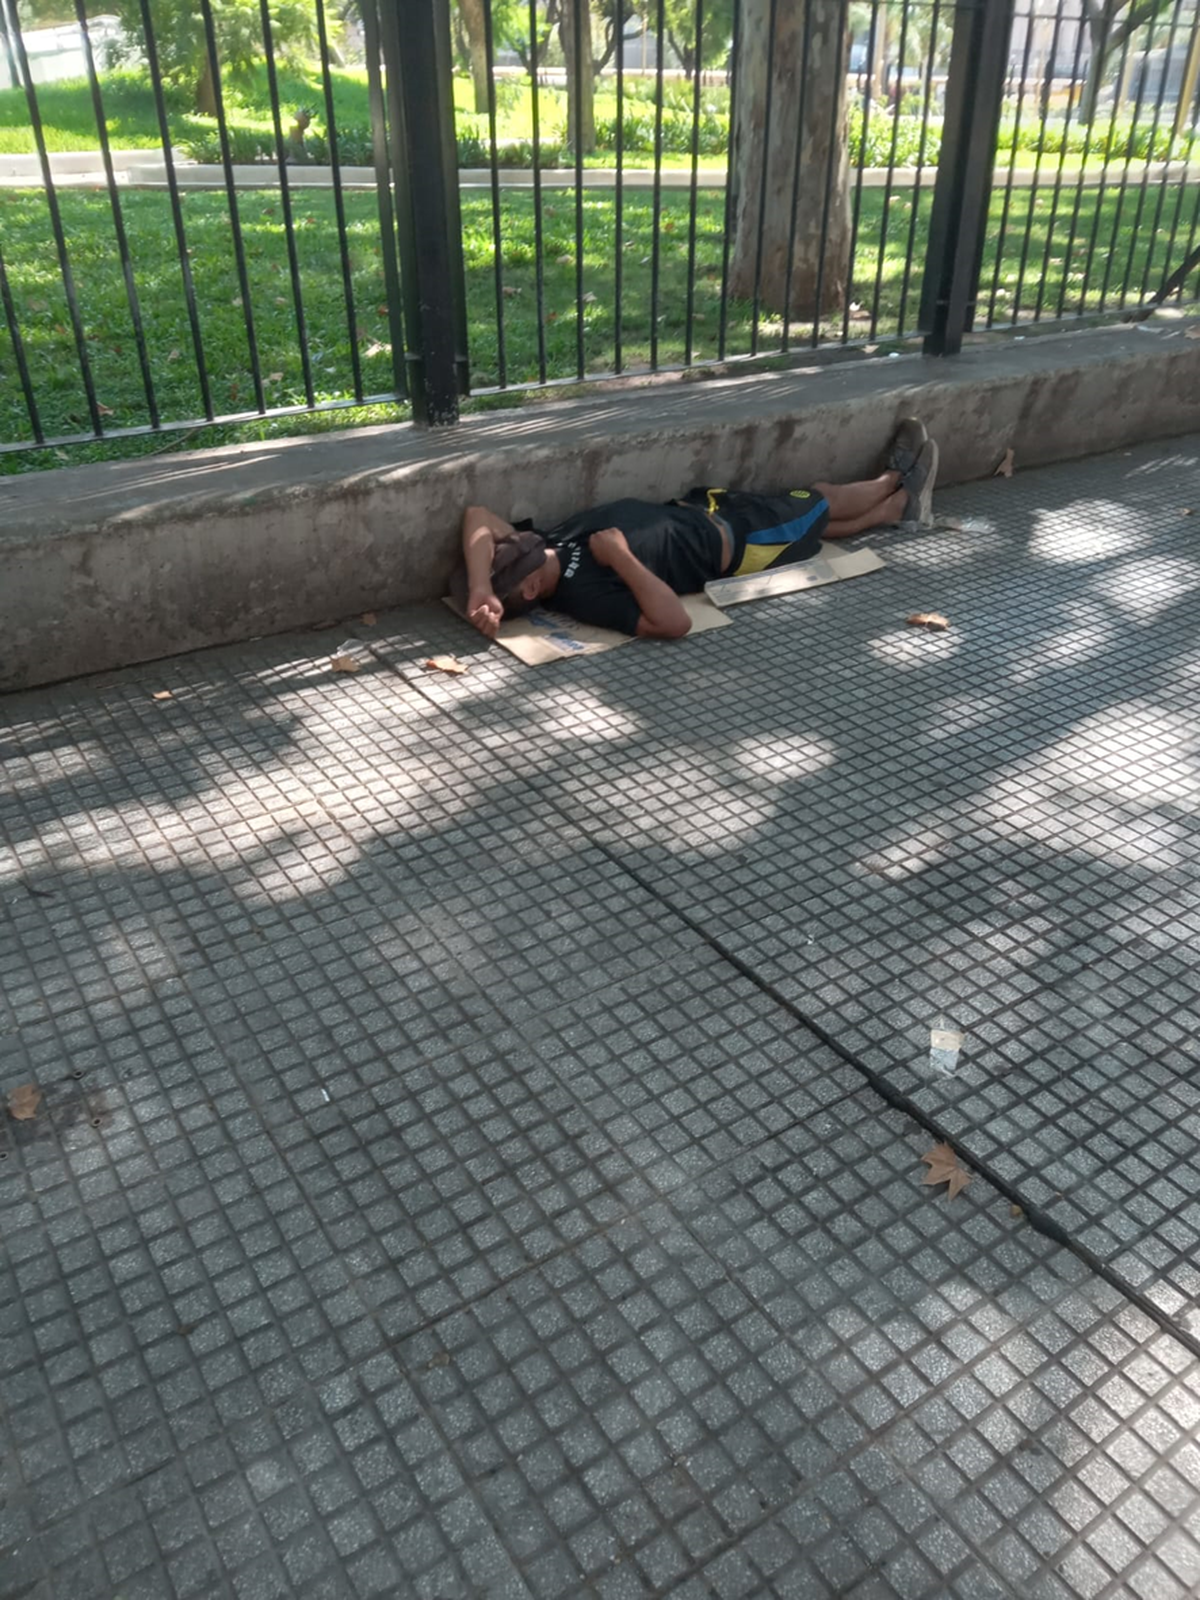 Homeless en Plaza Miserere del Once, soportando 38 grados de sensaci&oacute;n t&eacute;rmica